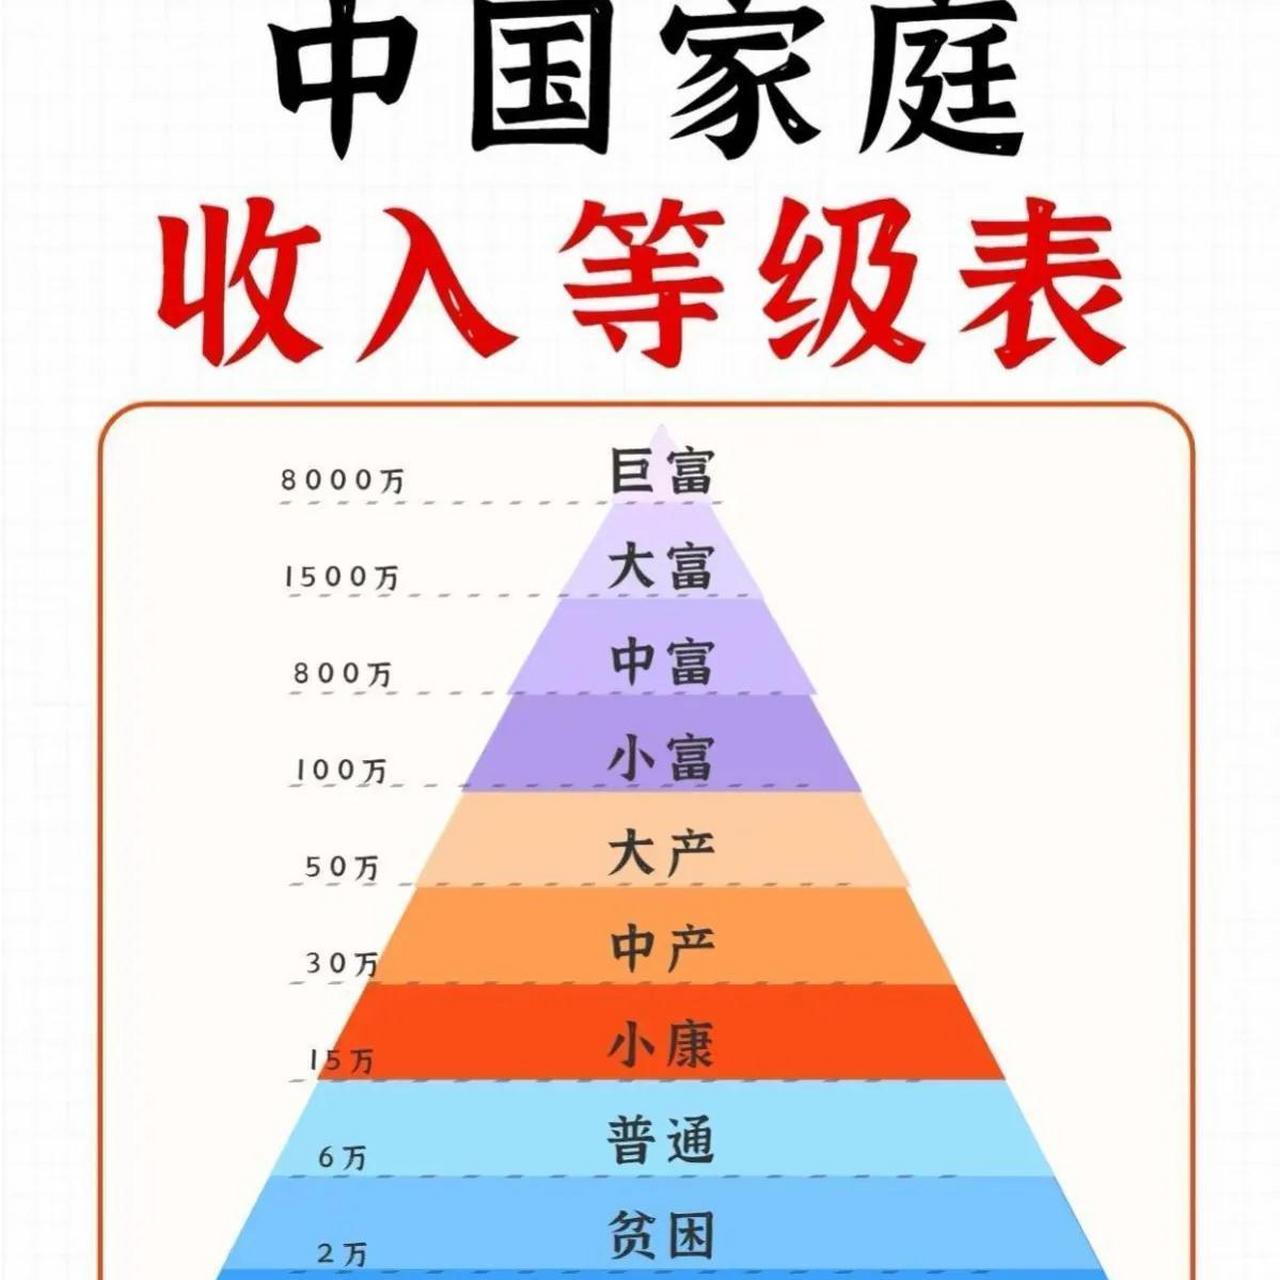 中国家庭 收入等级表,你的家在哪个级别呢?